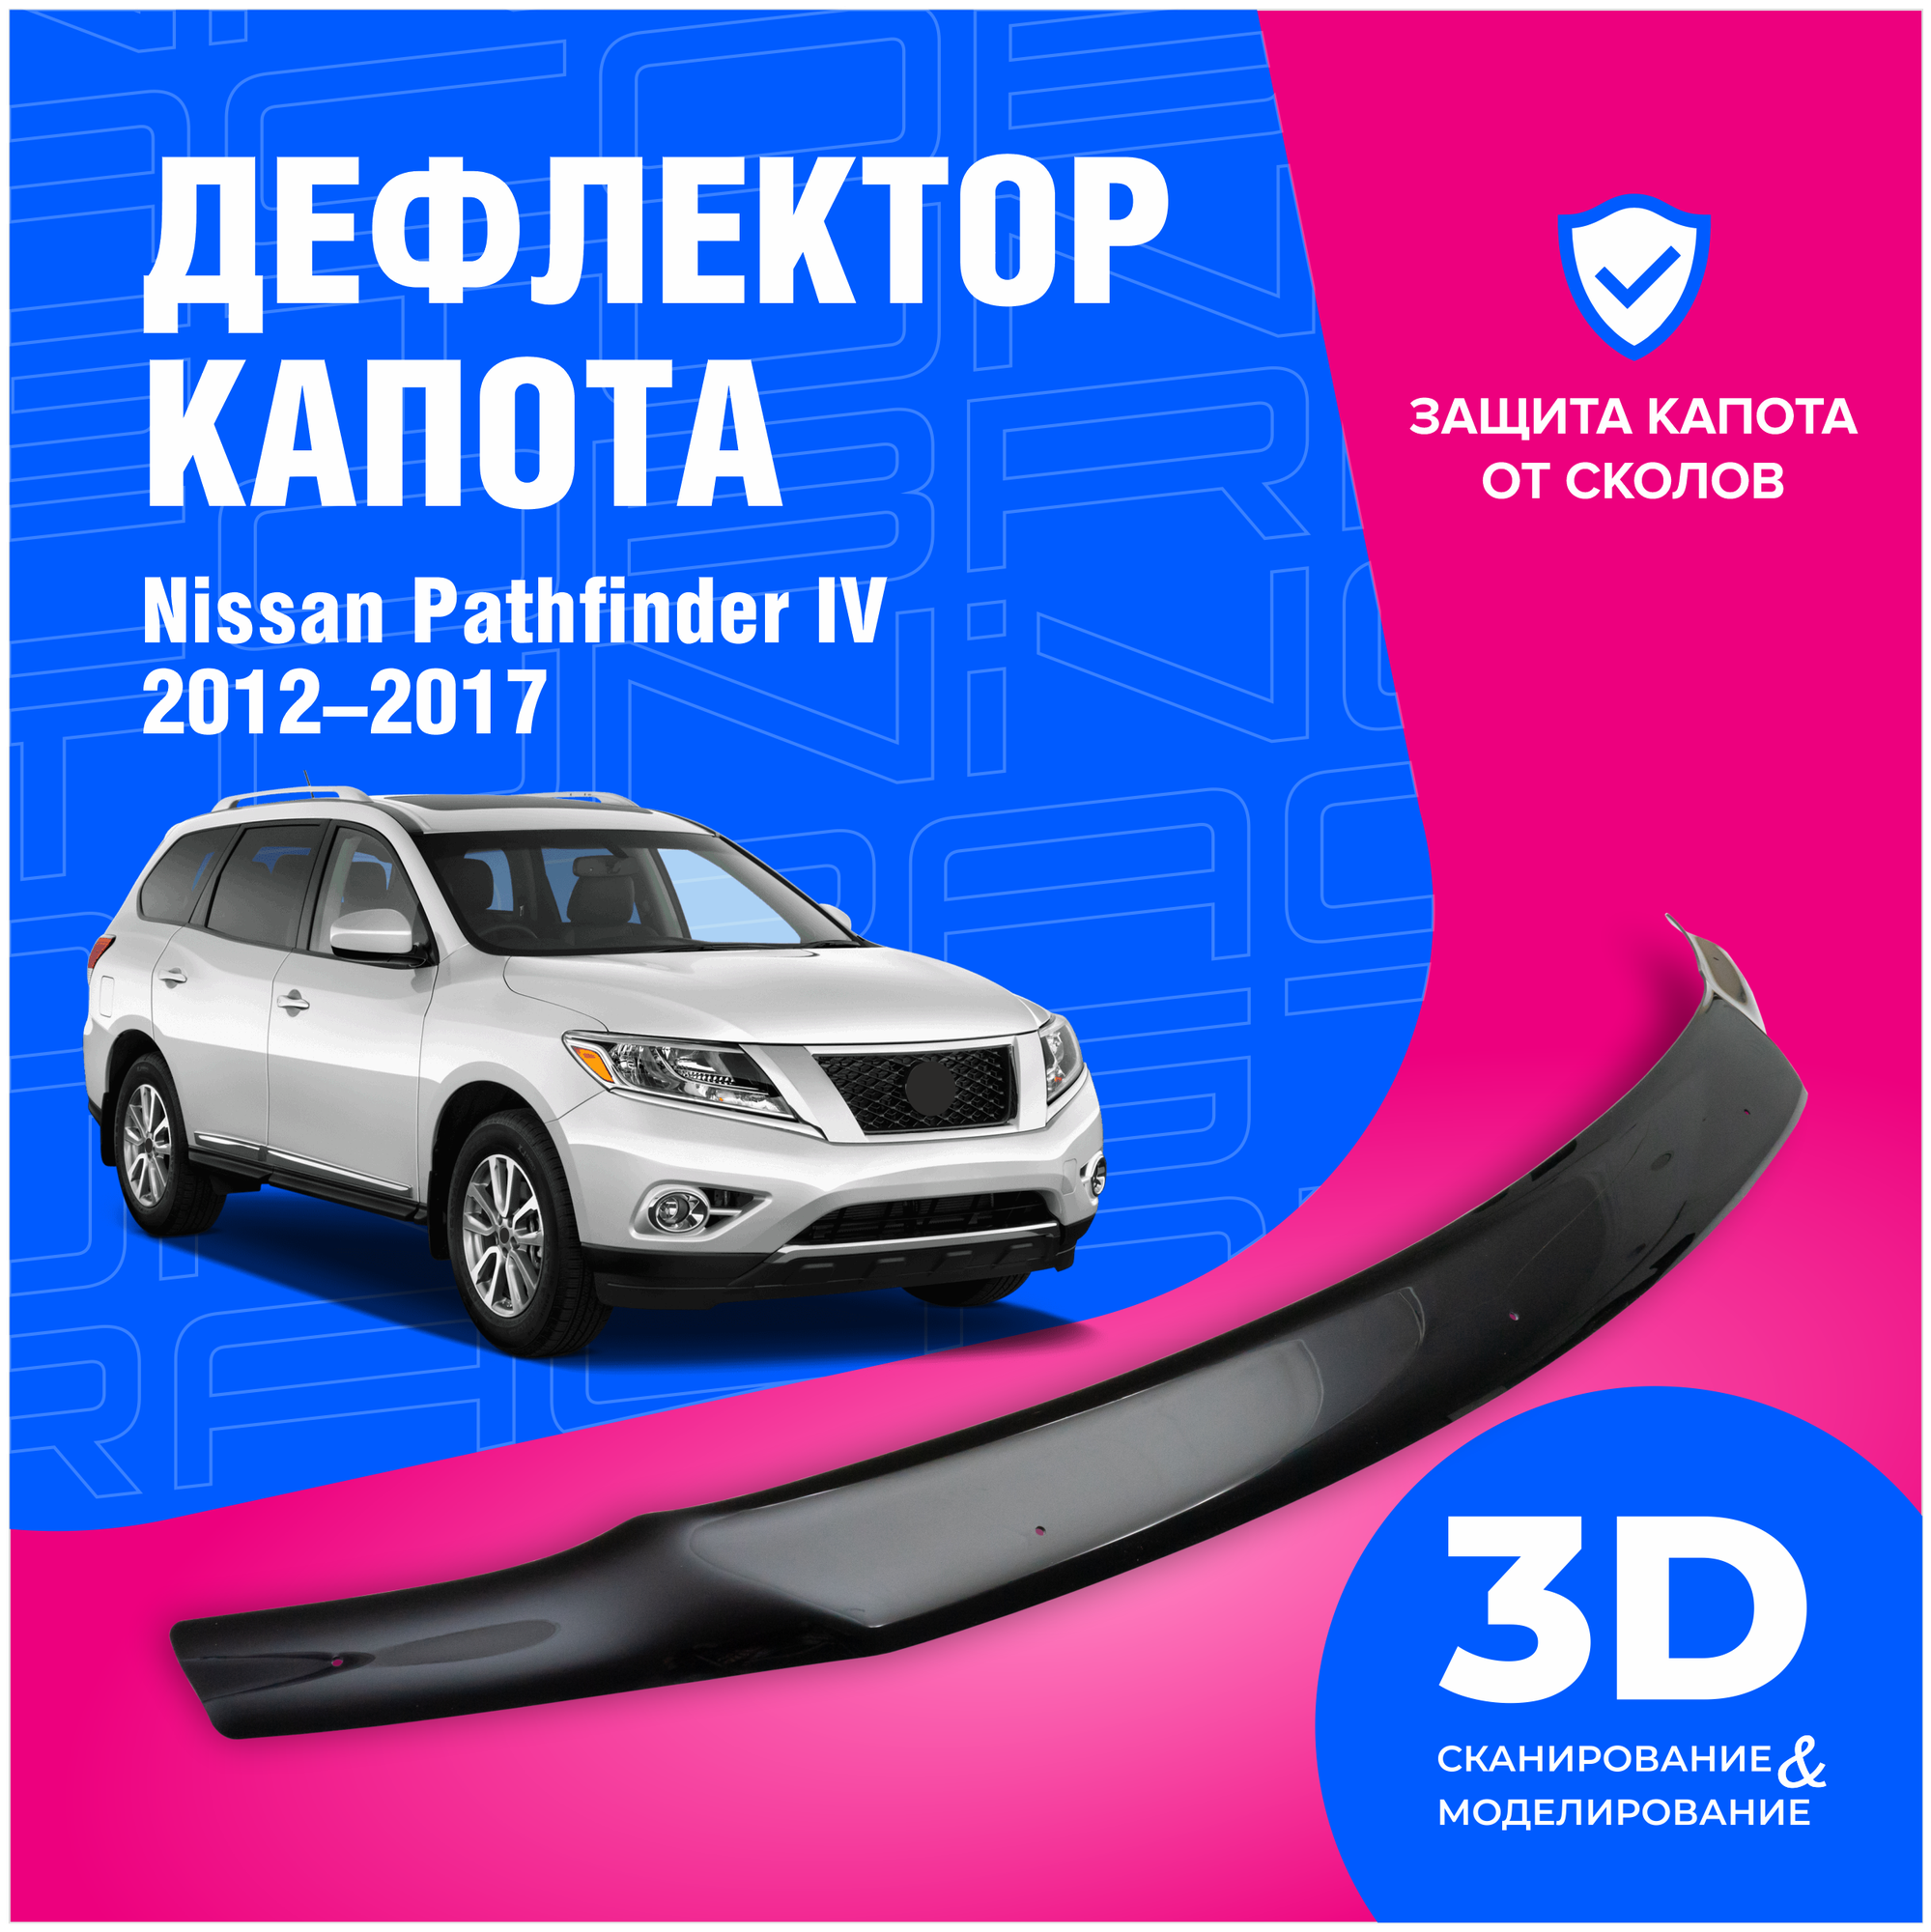 Дефлекторы боковых окон Nissan Pathfinder IV (R52) 2014 с хромированным молдингом ветровики